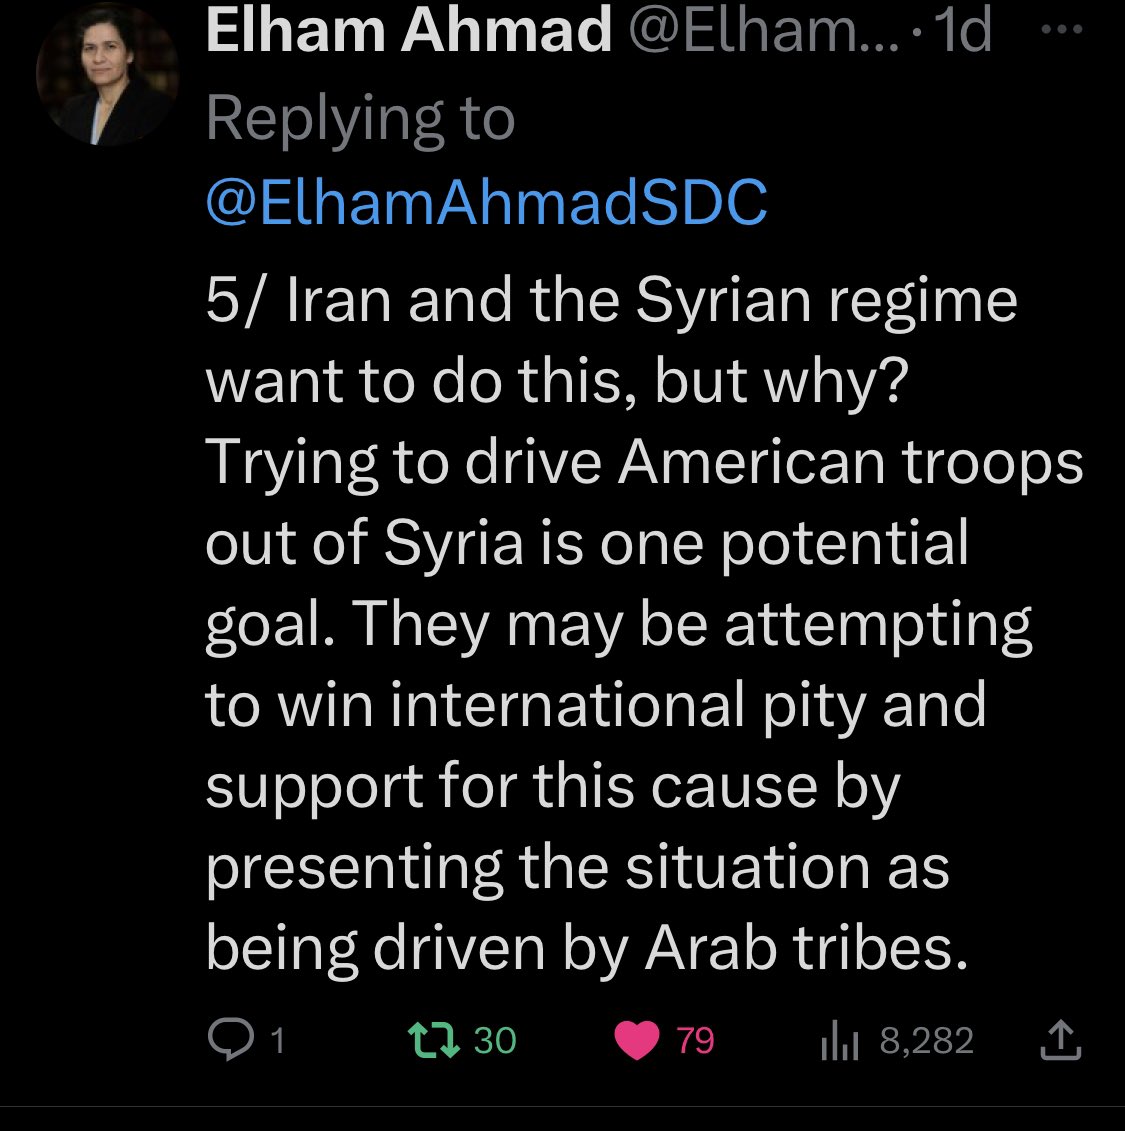 SDG başkanlığından @ElhamAhmadSDC diyor ki; “deirezor’daki olayların arkasında iran ve rejim var” doğru söylüyor. KRG-Bağdat arası anlaşma ile Kürd ordusu #Kerkuk de konuşlanacak ve buna karşı ayaklanan ve kürd kanı dökenlerin arkasında kim var; elbet iran. Pkk’li medyaya göre…